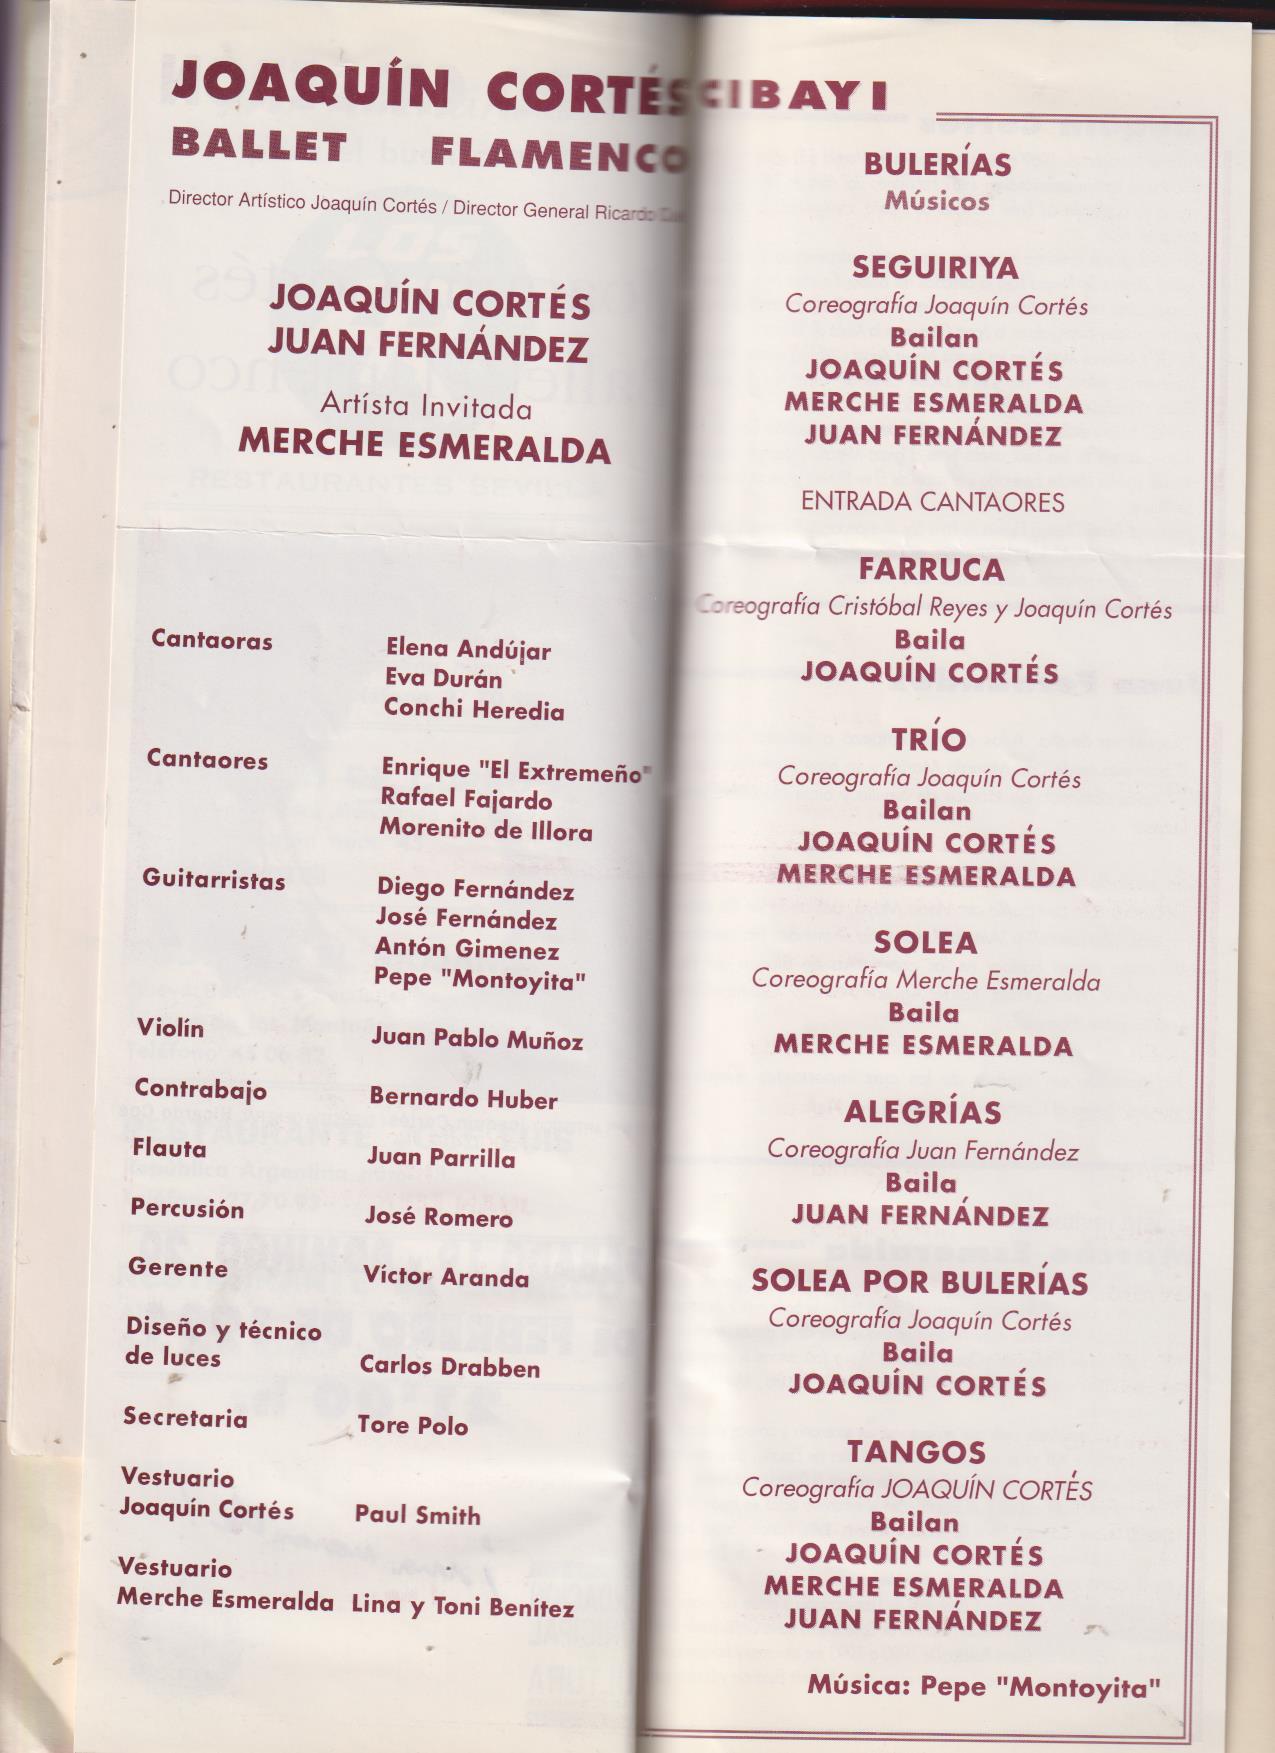 6 folletos de Espectáculos encuadernados en un tomo: Recital de Baile Español por María Dolores La Cordobesa